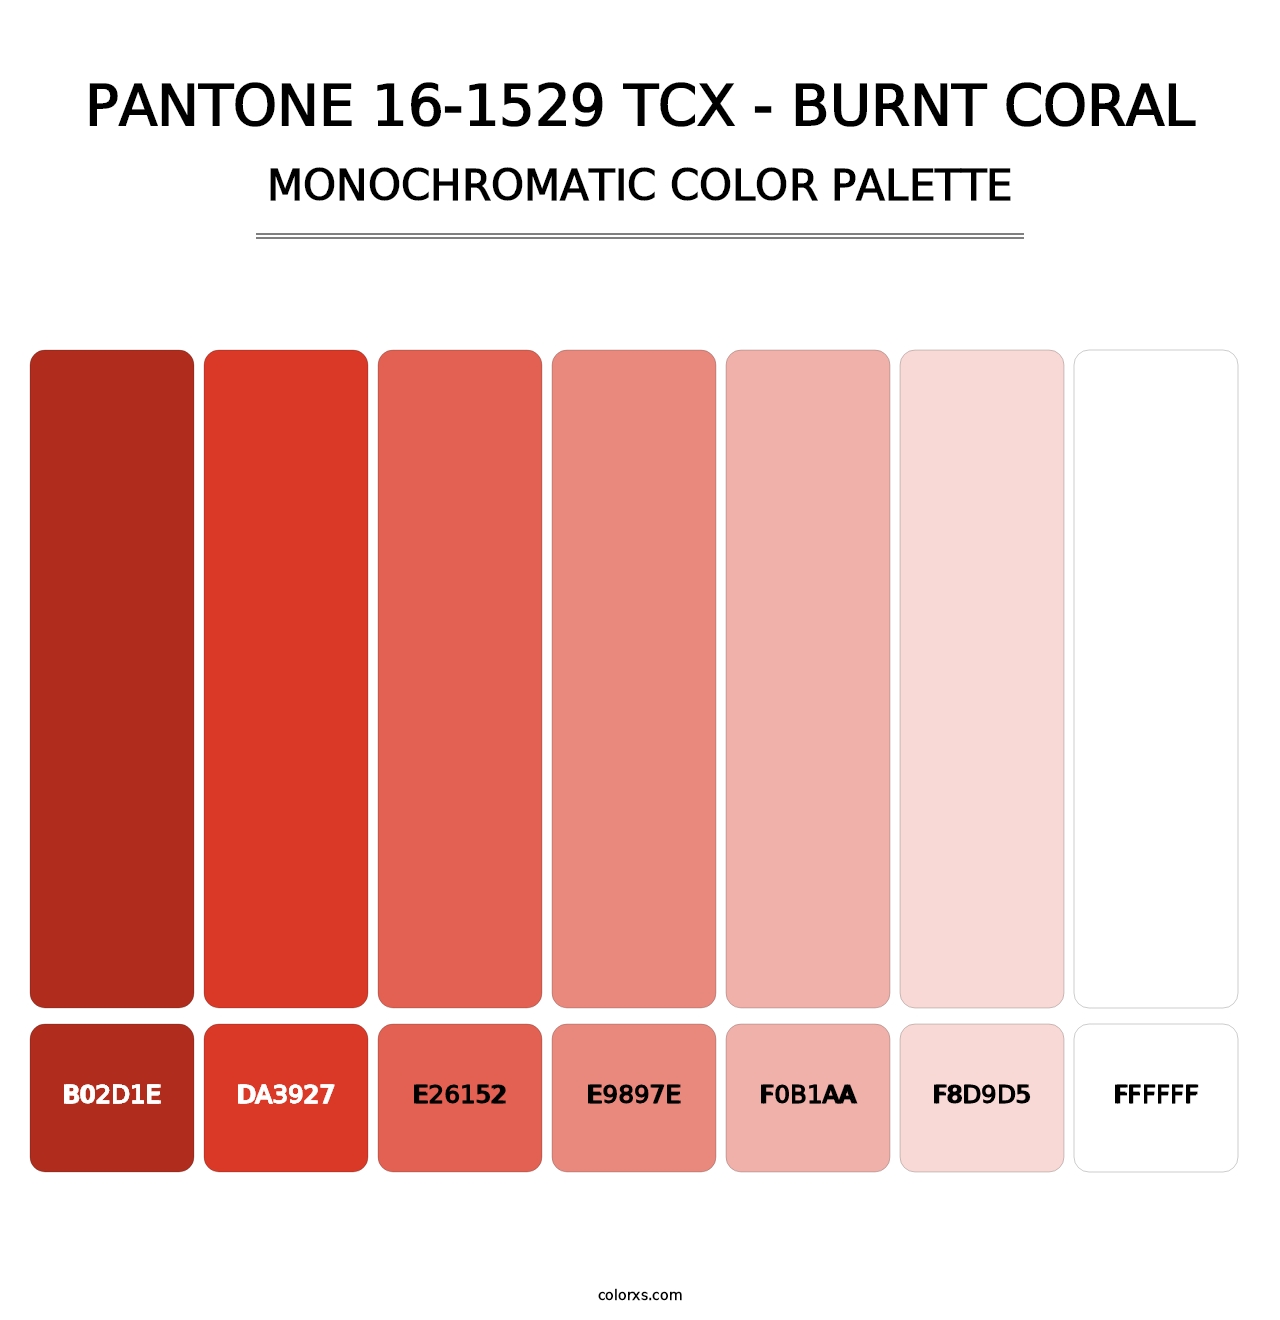 PANTONE 16-1529 TCX - Burnt Coral - Monochromatic Color Palette